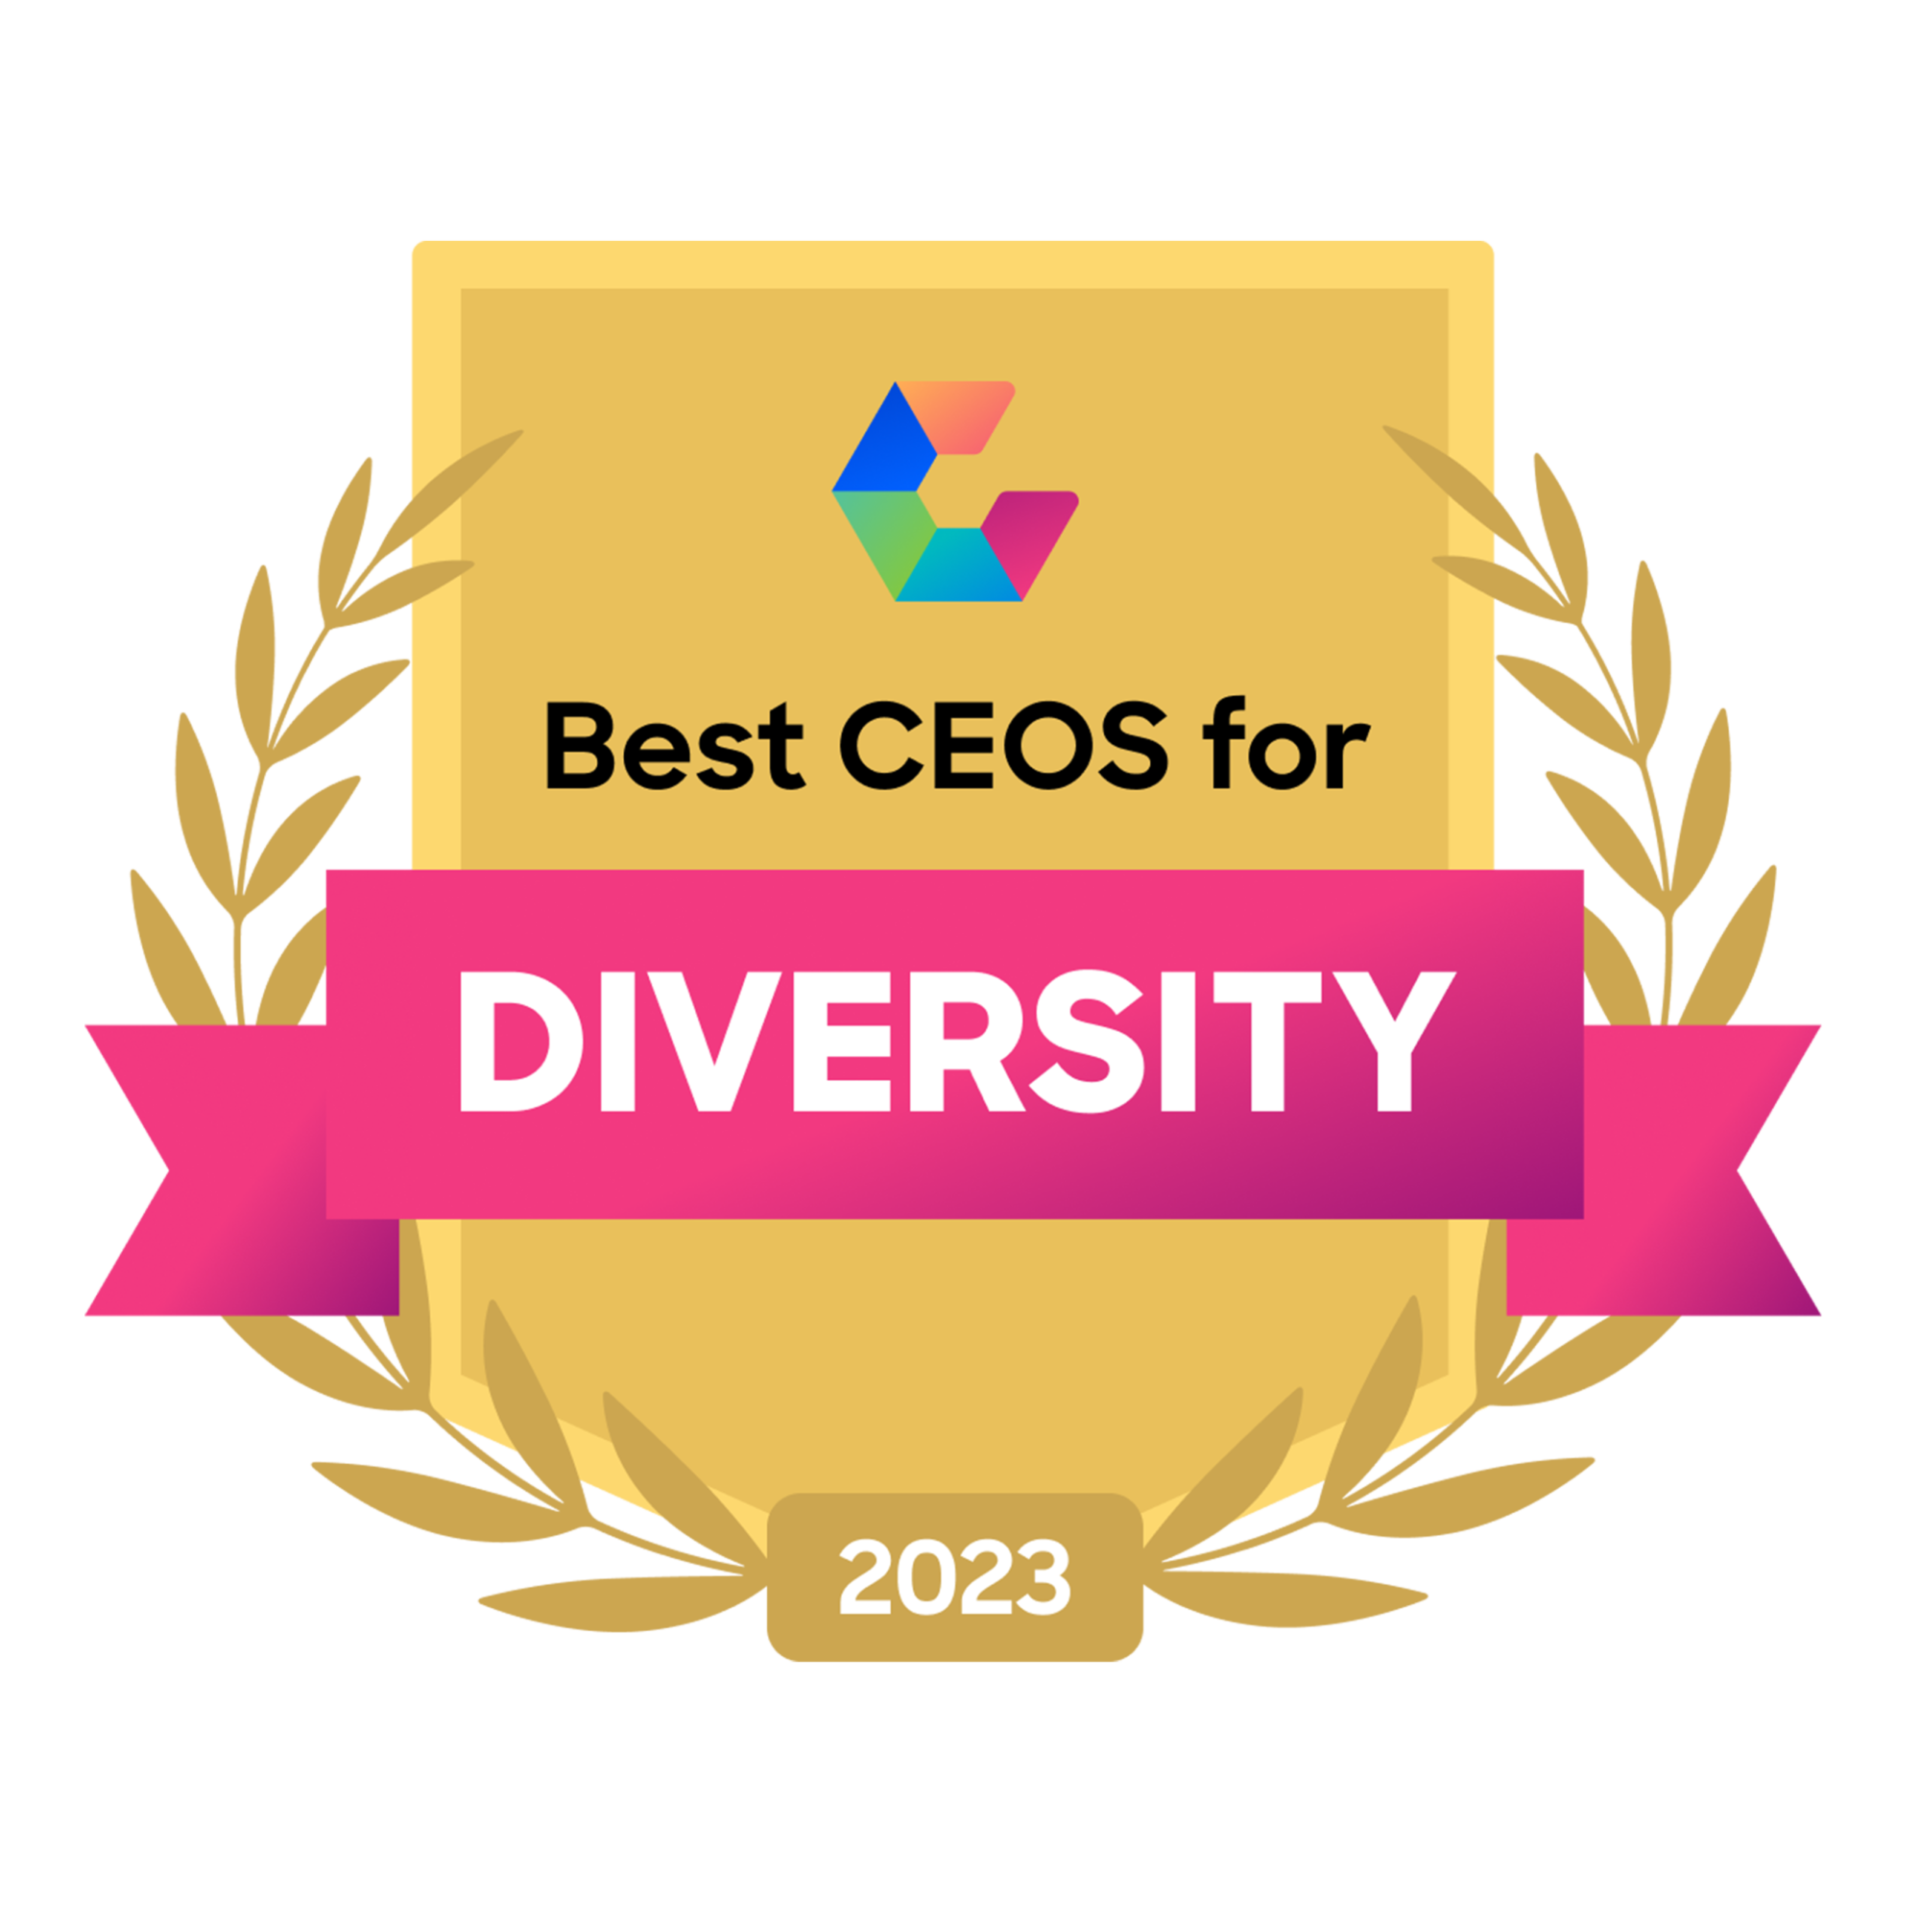 Melhor CEO para diversidade 2023